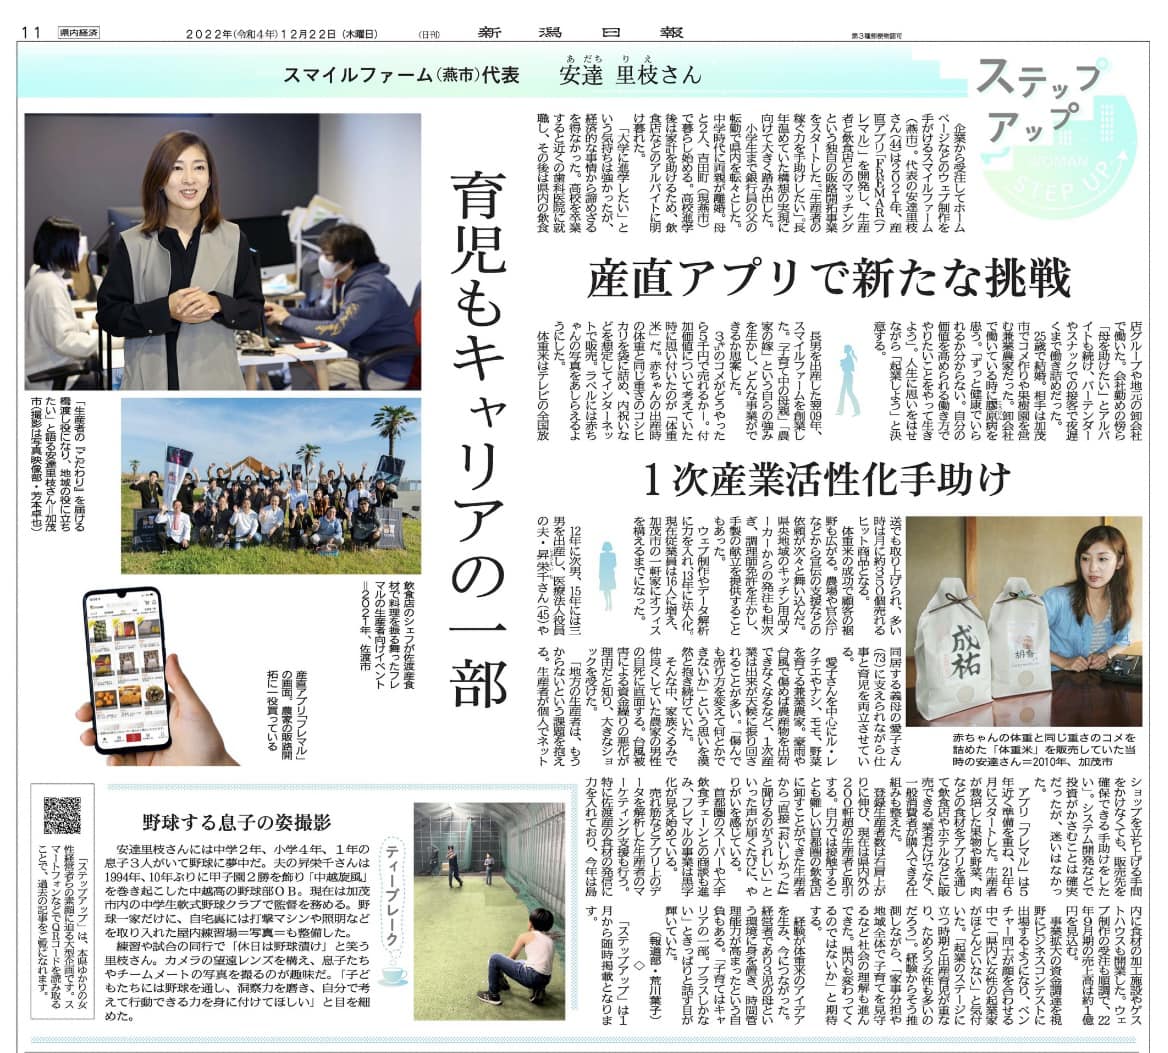 弊社代表の安達の特集記事が新潟日報経済面に掲載されました